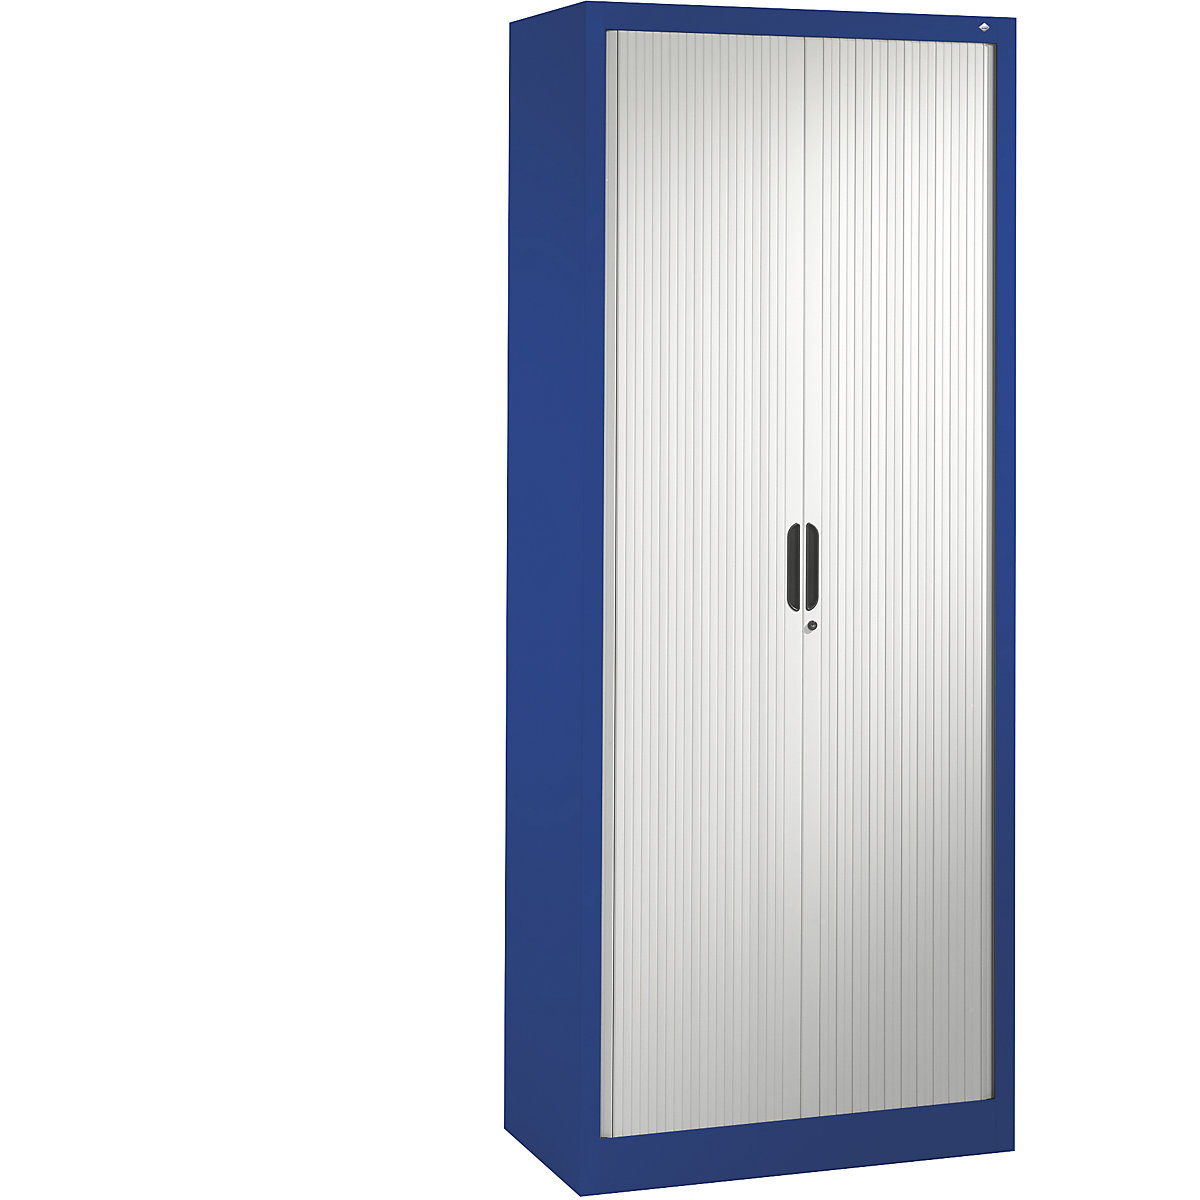 Roller shutter cupboard with horizontal shutter – C+P, HxWxD 1980 x 800 x 420 mm, 4 shelves, 5 file heights, gentian blue / light grey-5